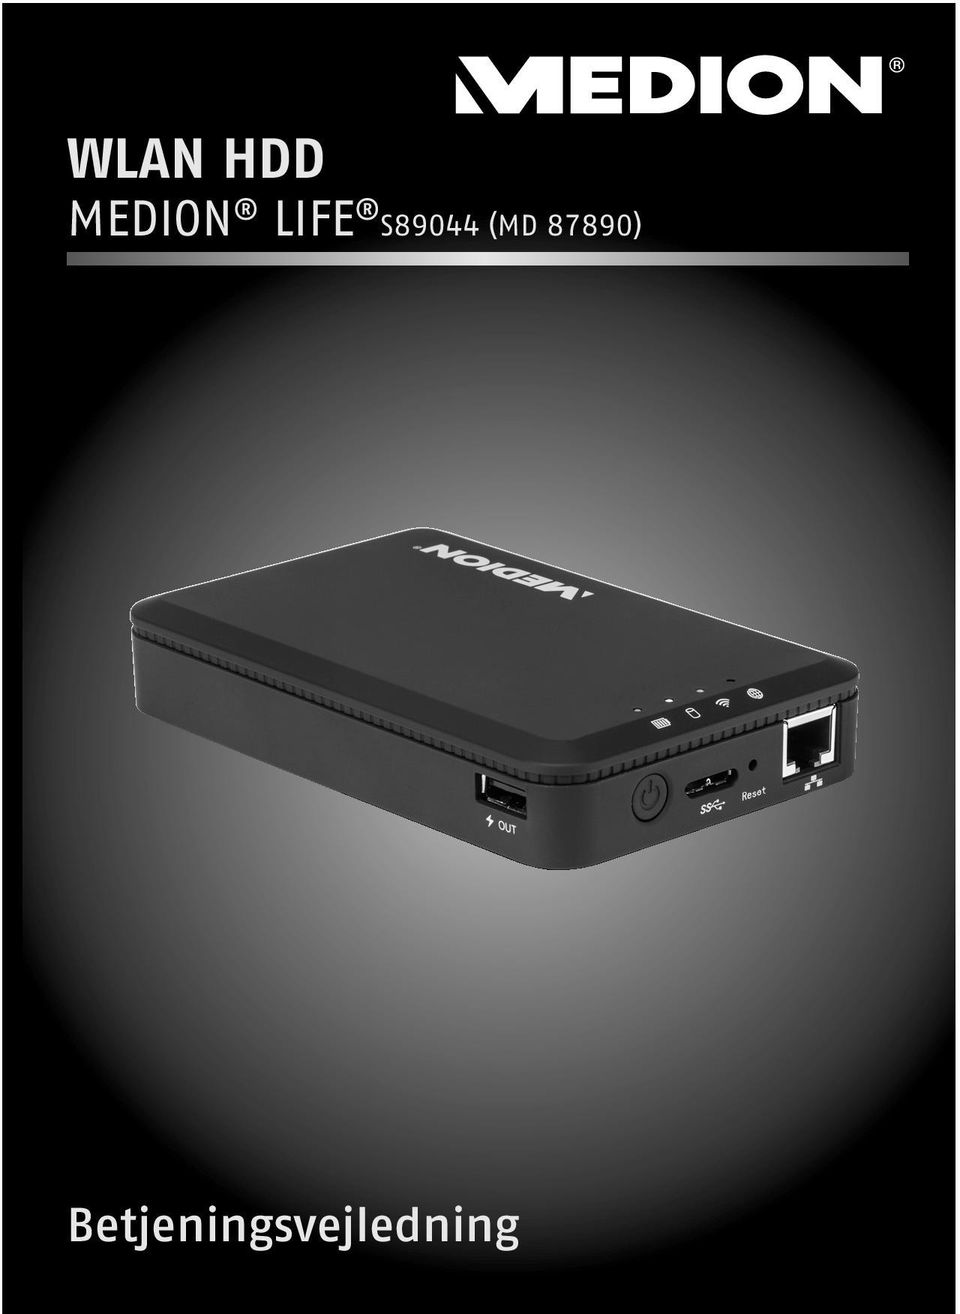 WLAN HDD MEDION LIFE S89044 (MD 87890) Betjeningsvejledning - PDF Free  Download